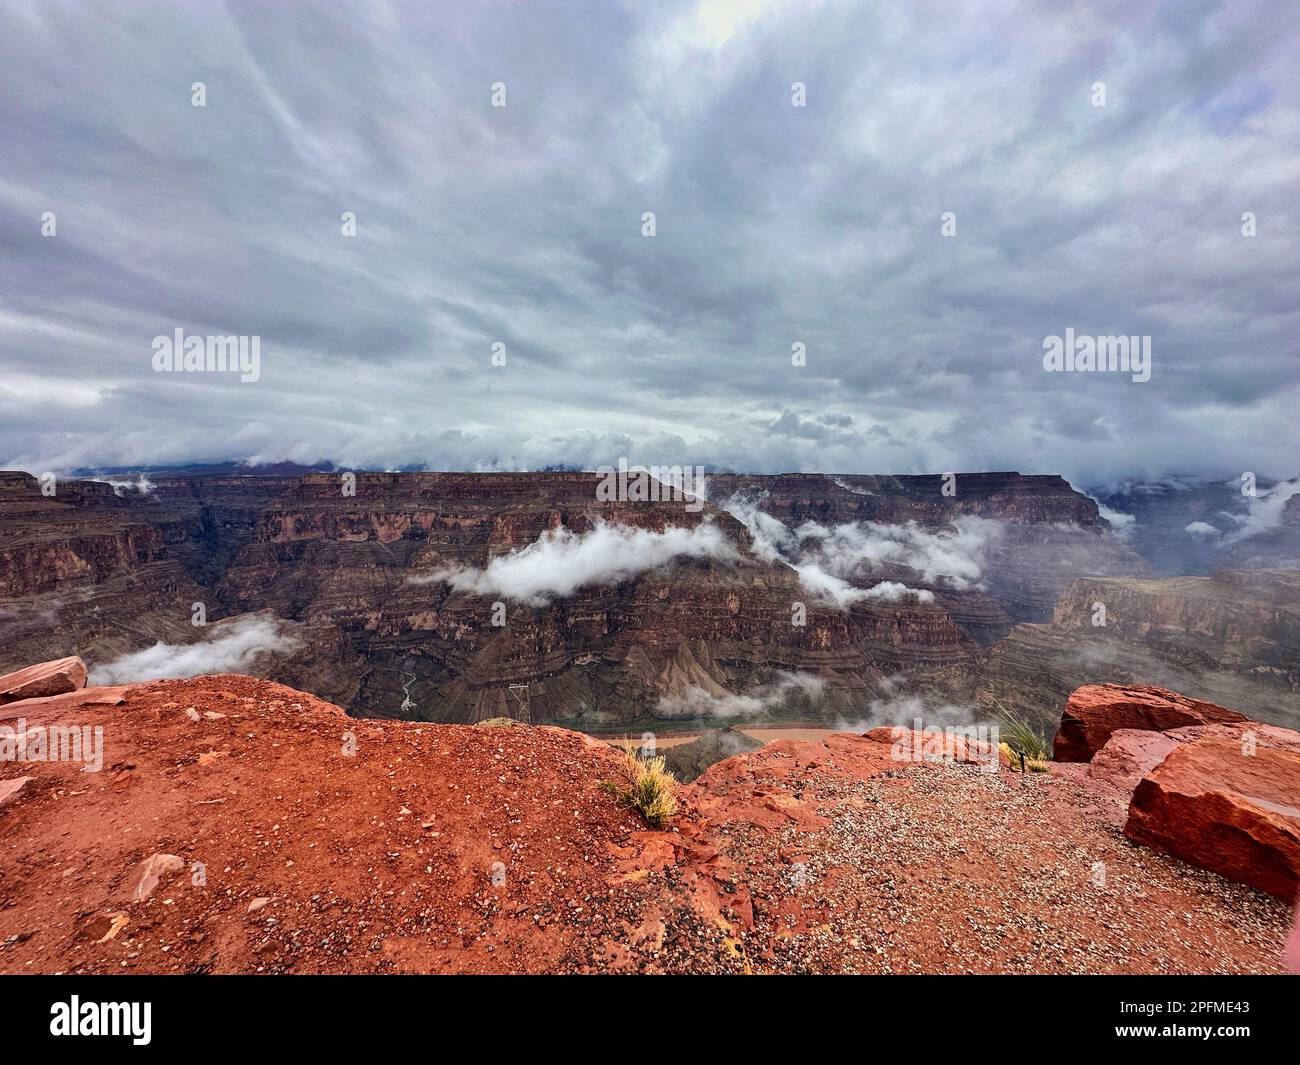 Dans les nuages, sur le plateau ouest du Grand Canyon. Guano point plein de nuages lors d'une journée froide humide de brouillard à l'une des sept merveilles du monde. Banque D'Images